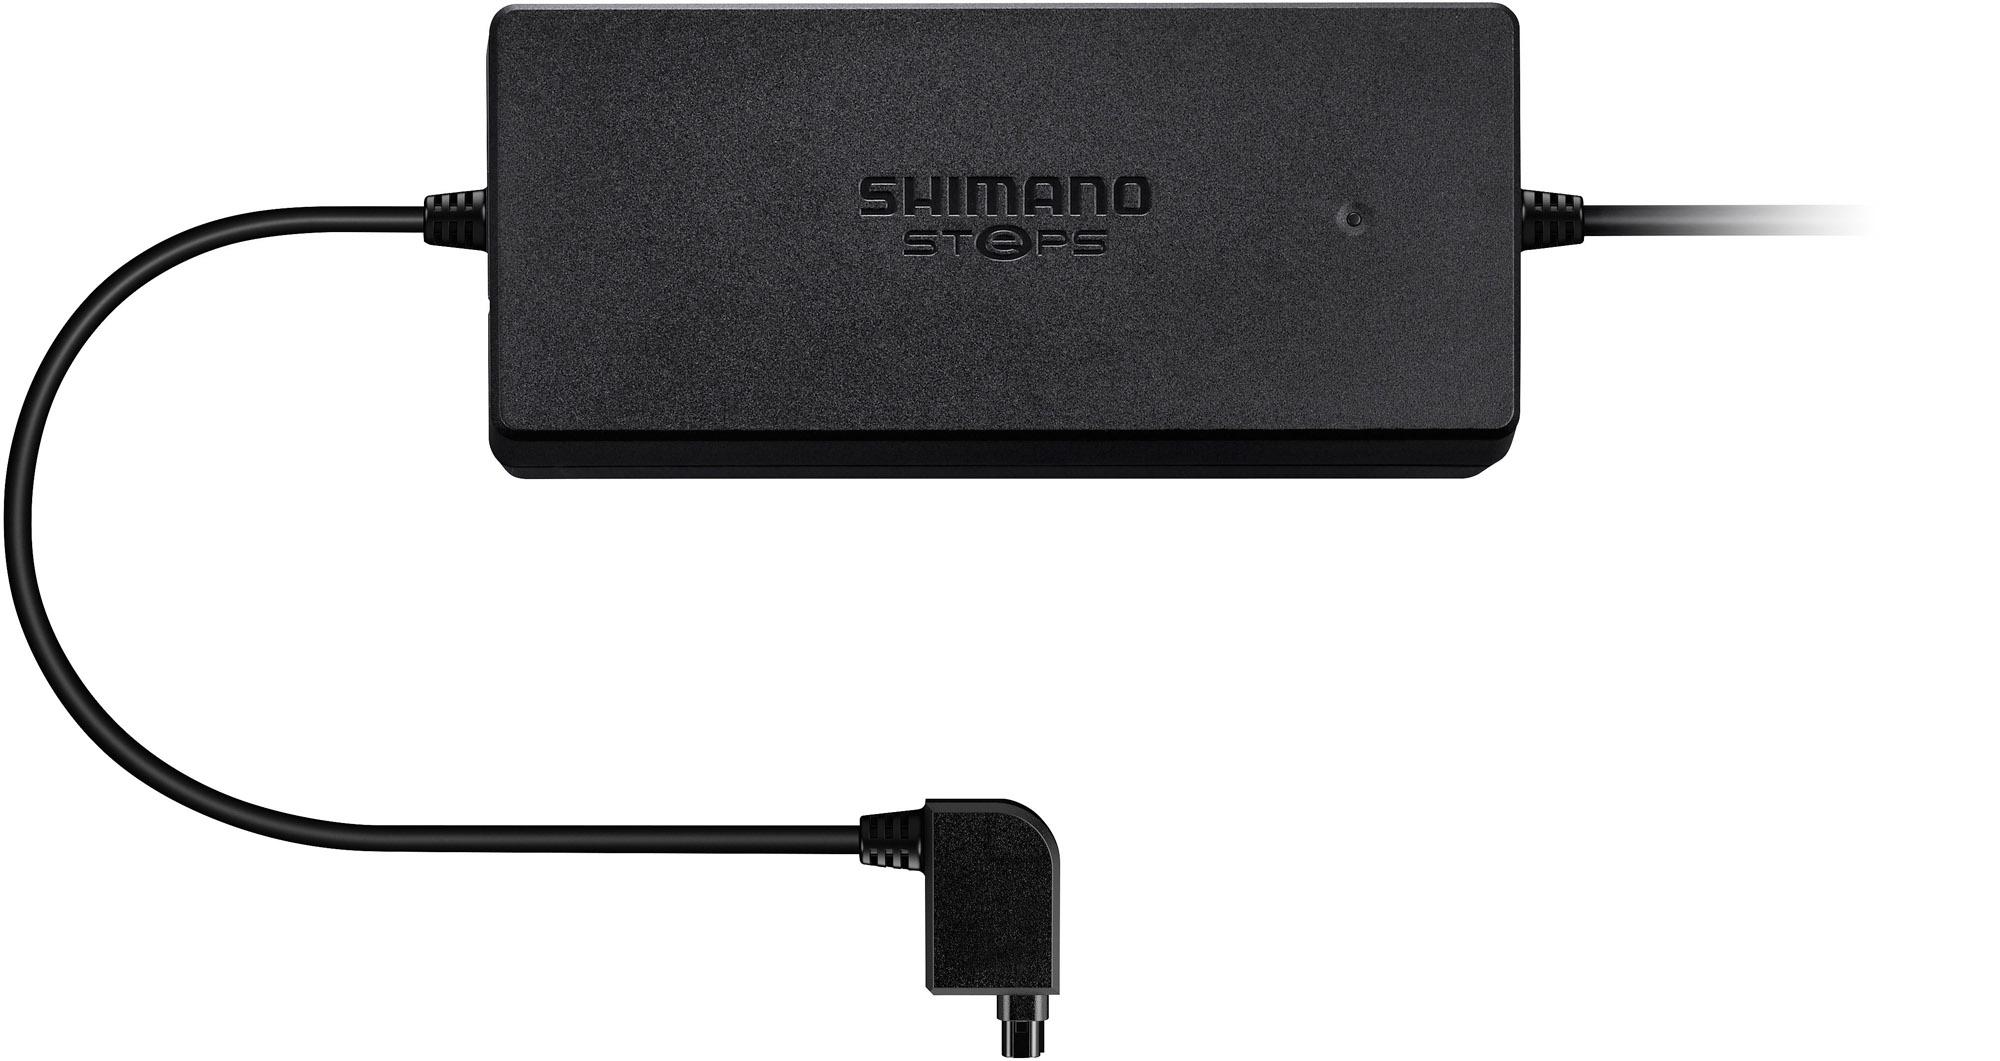 Shimano Steps Ec-e6000 Battery Charger  Black